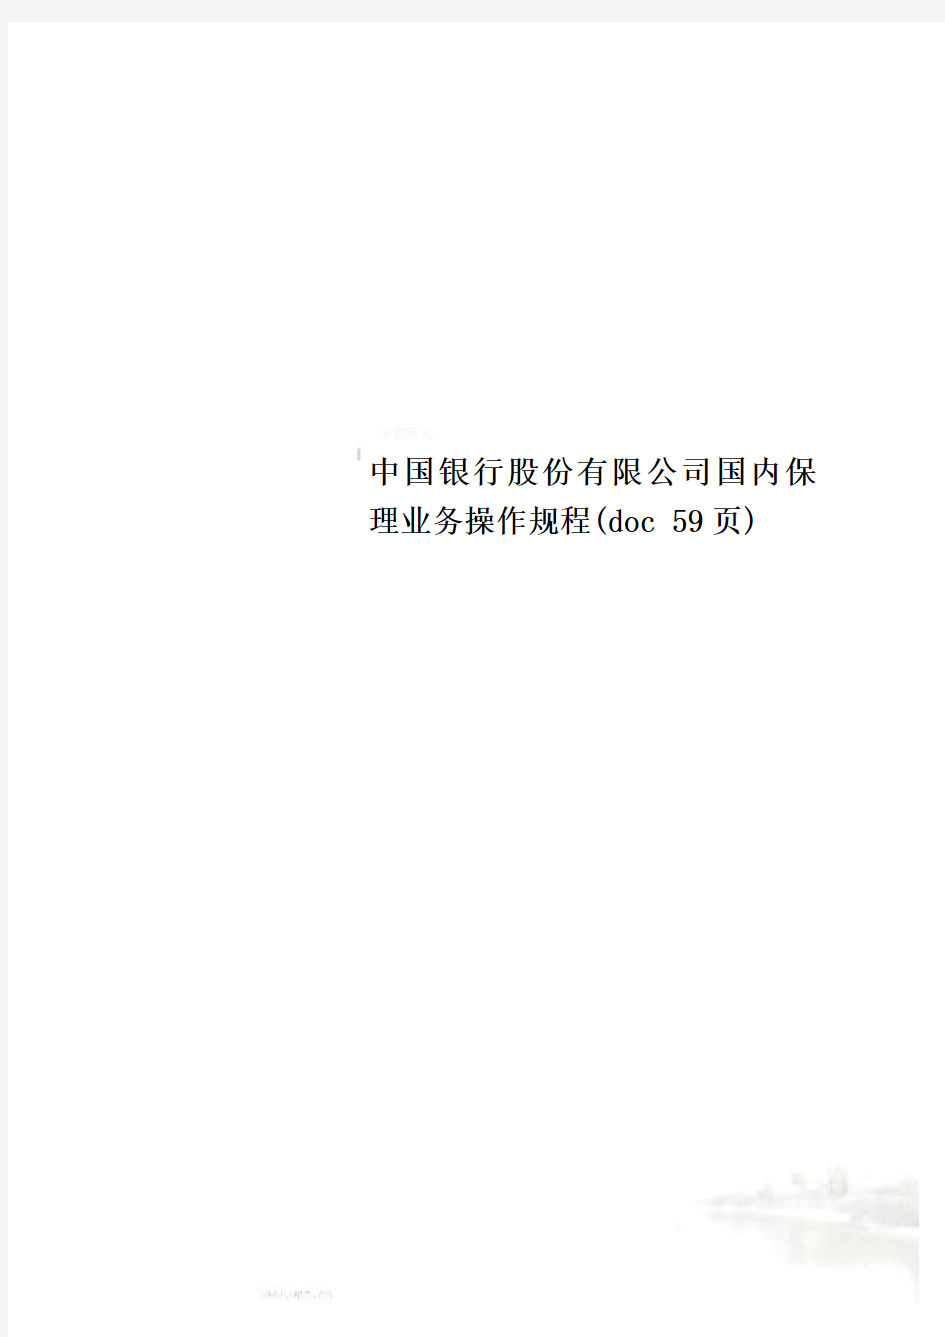 中国银行股份有限公司国内保理业务操作规程(doc 59页)